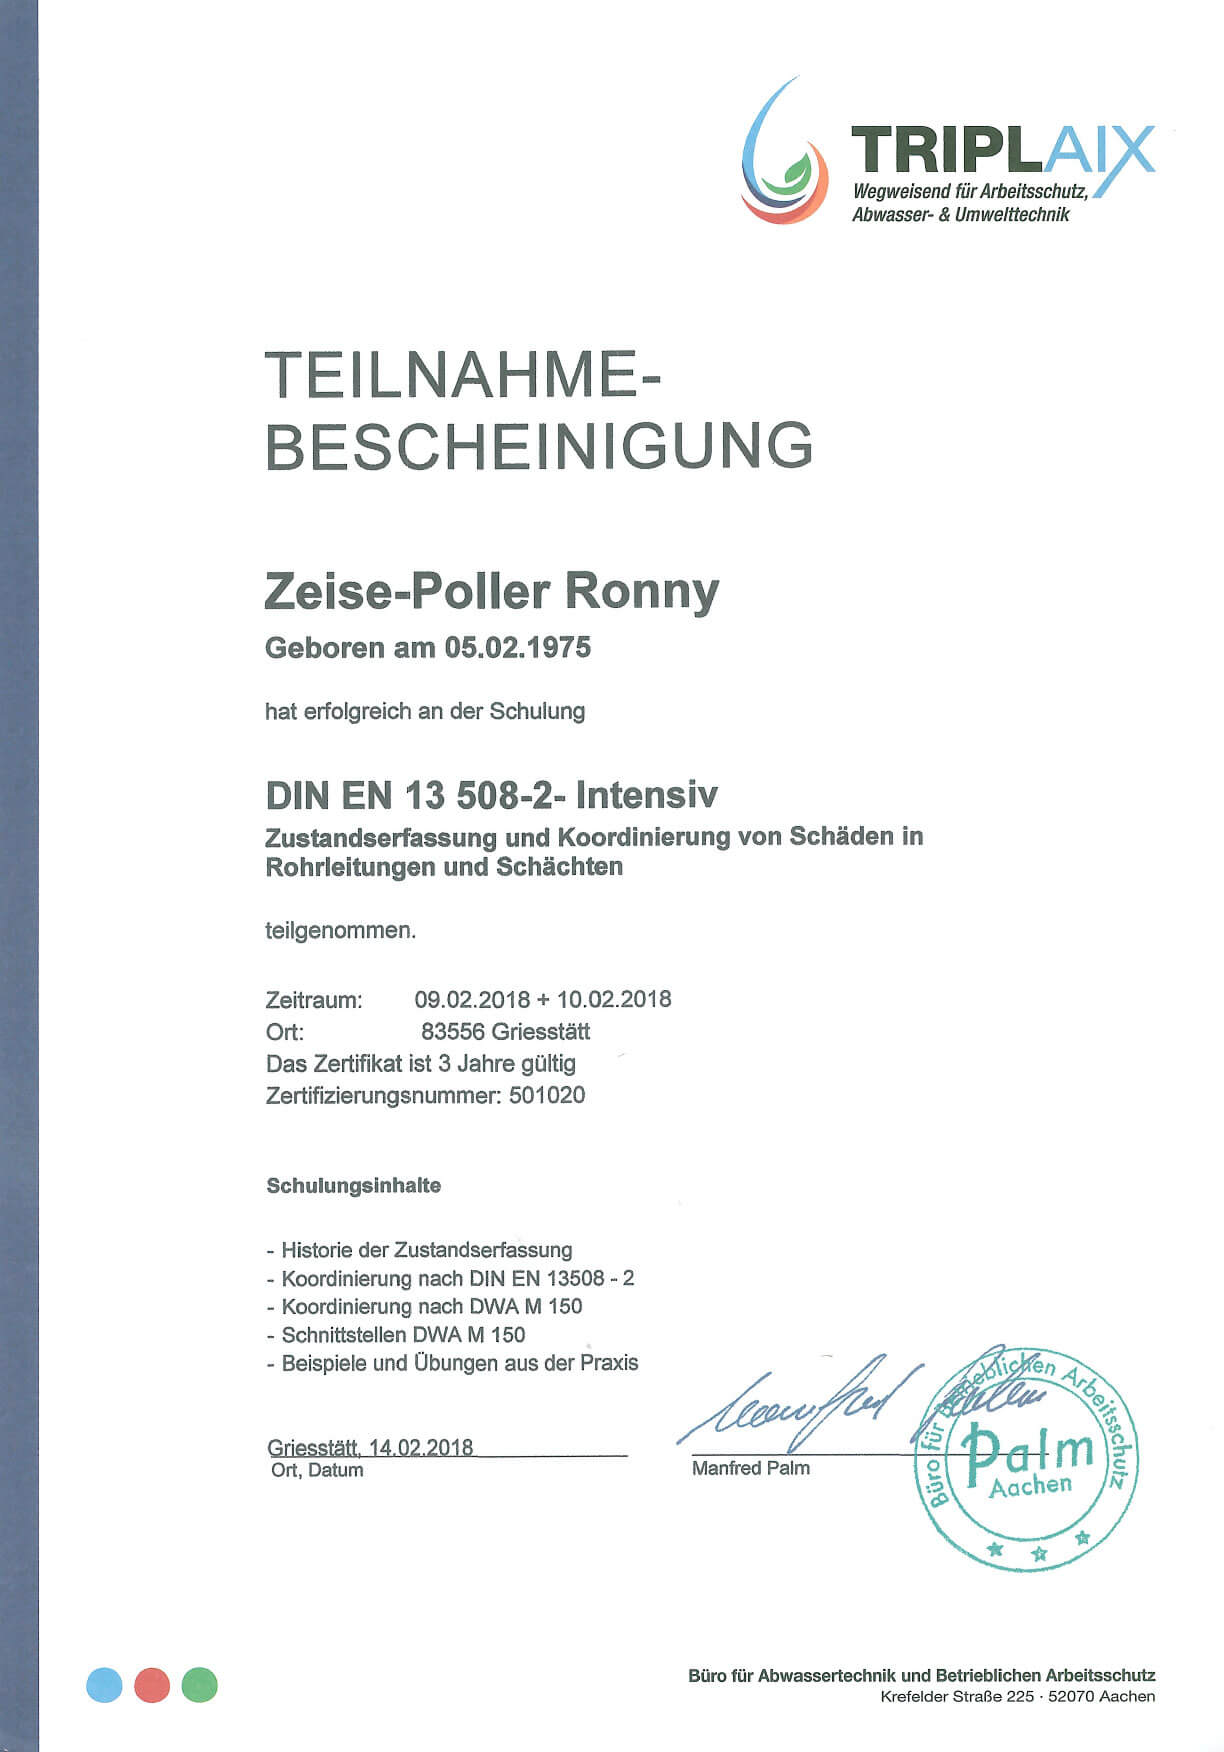 Zertifikat-Kanalservice Braunen